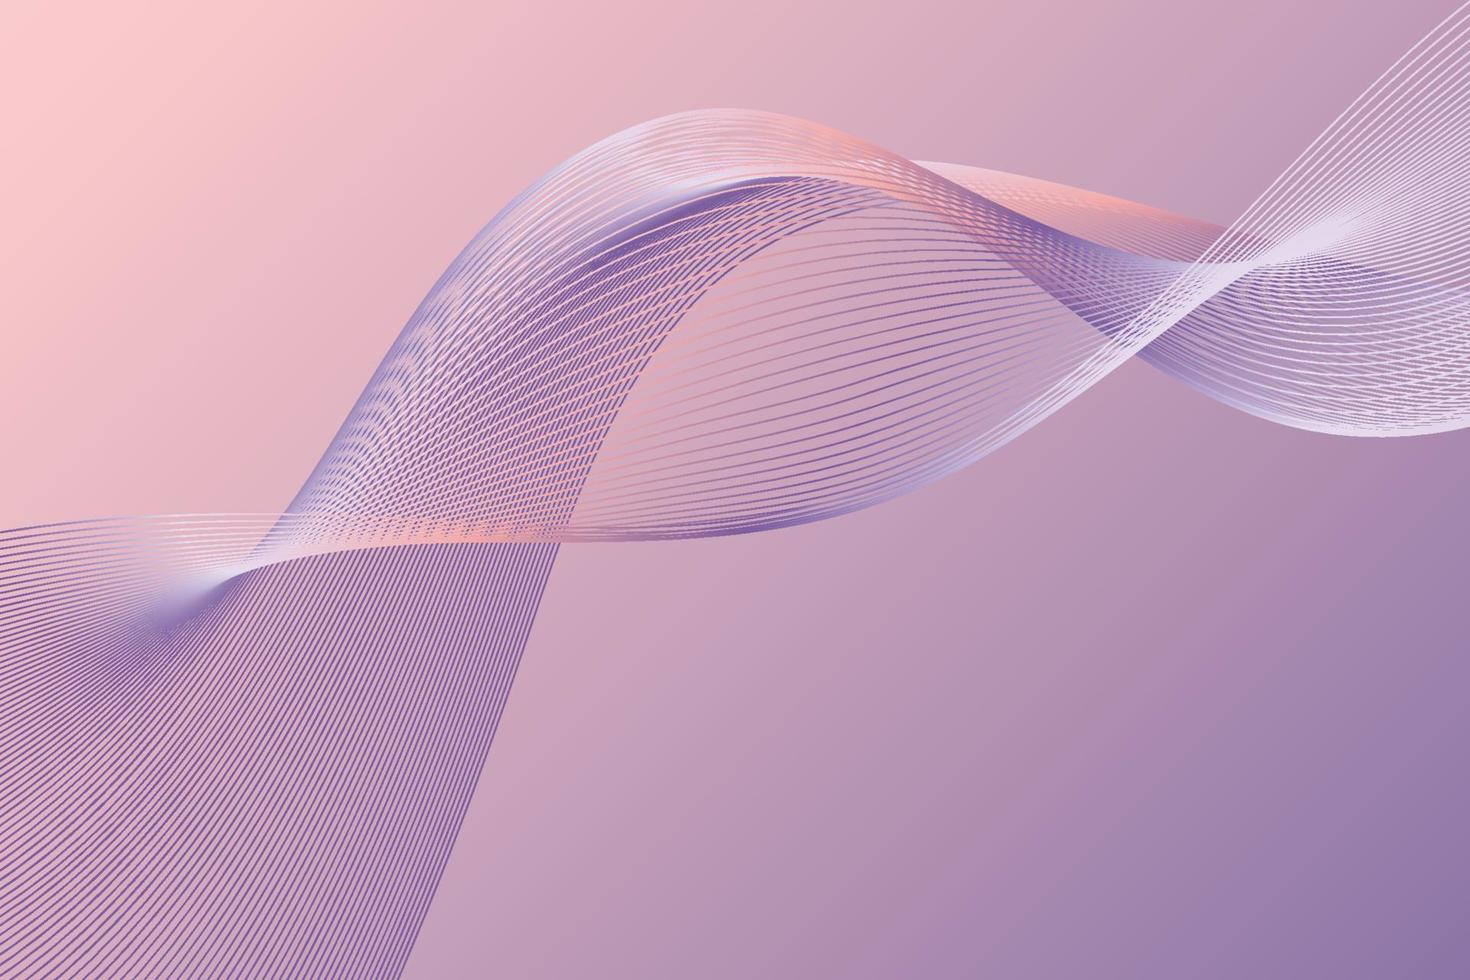 elementi ondulati viola lisci decorativi come le linee curve. immagine dell'onda elegante. composizione semplice vibrante e dinamica in stile minimalismo vettore